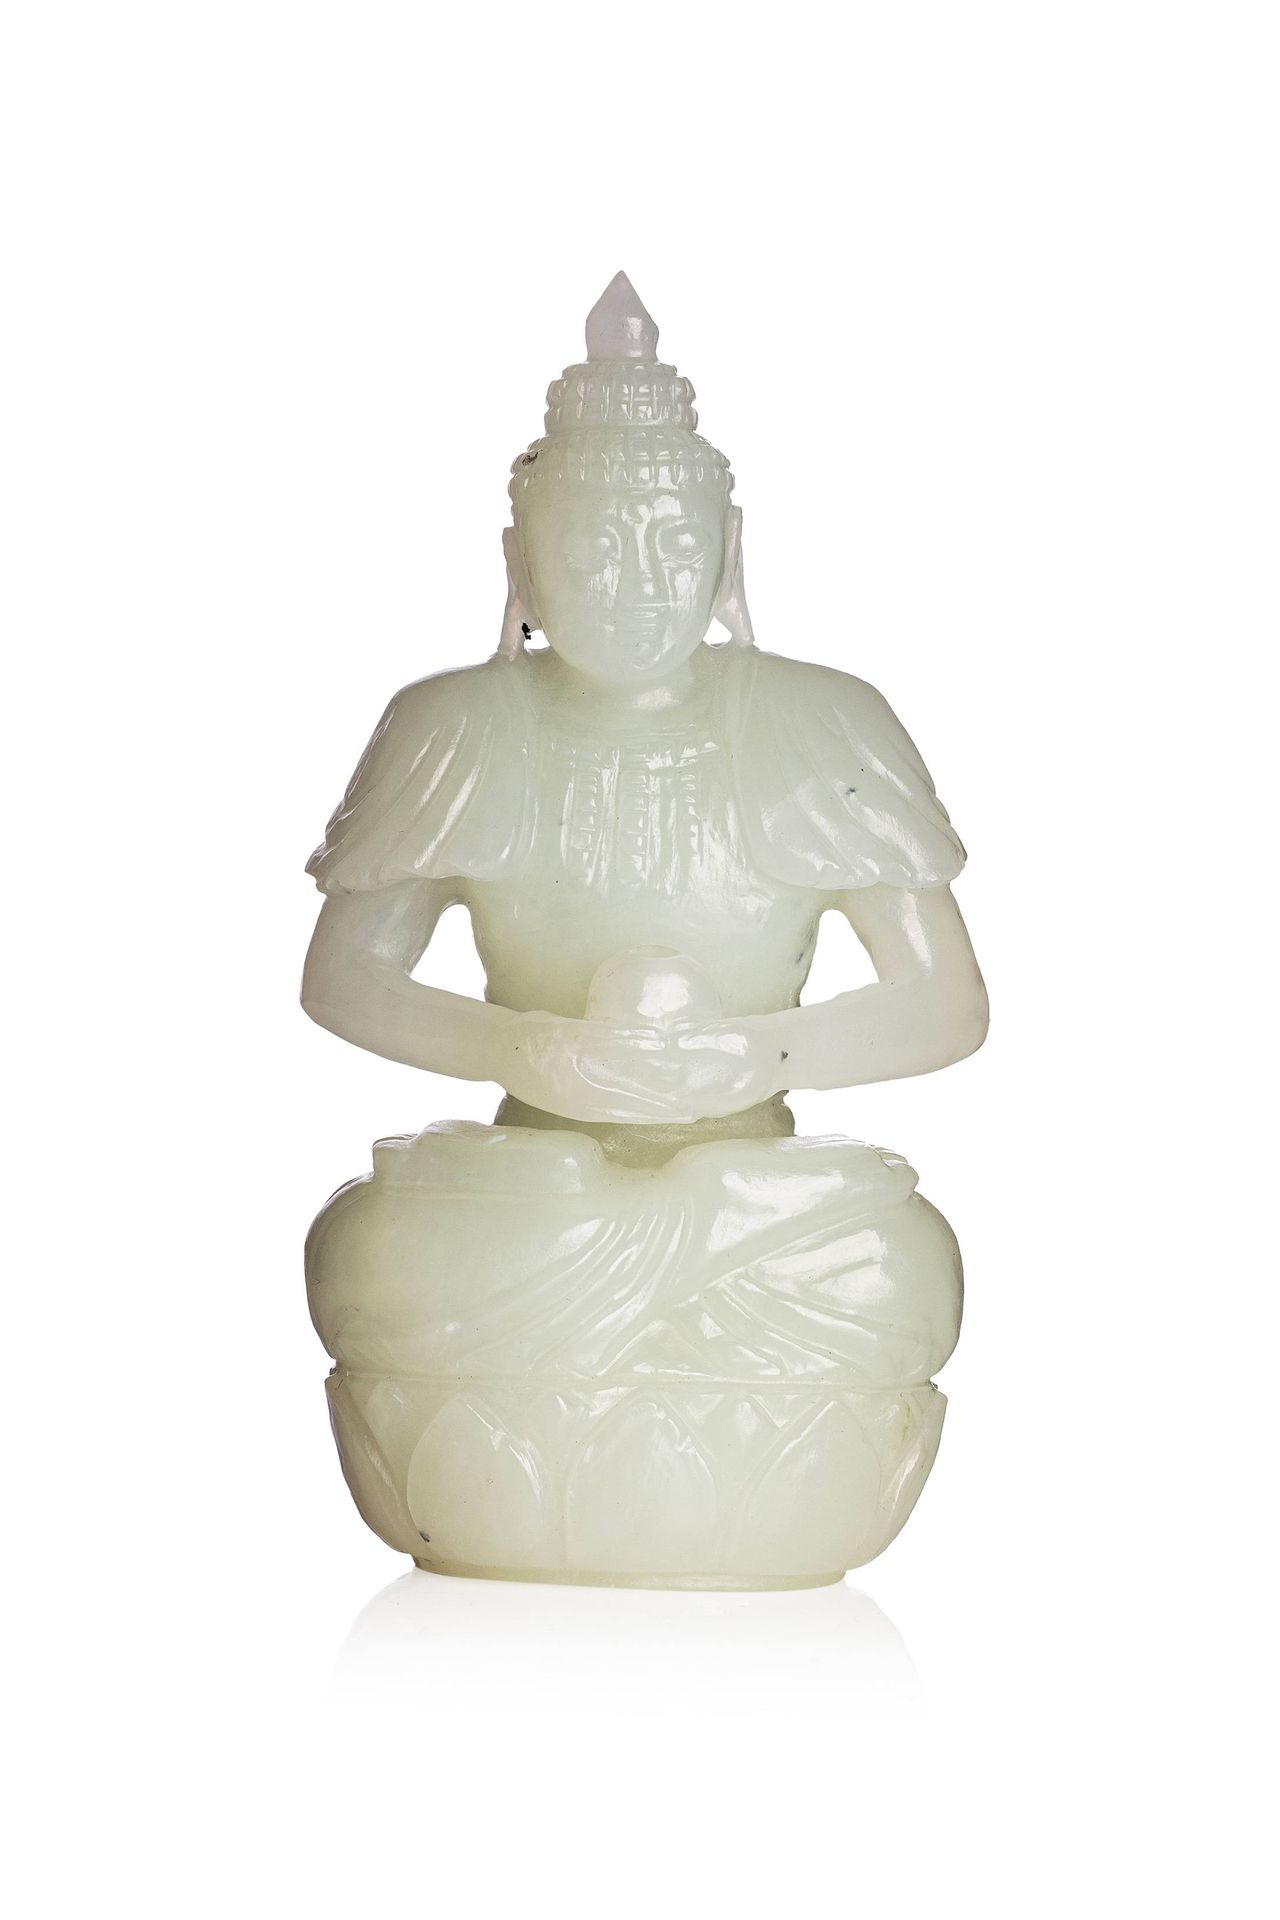 CHINE, XXe siècle 
Bouddha en jade blanc

La divinité assiste en padmasana sur u&hellip;